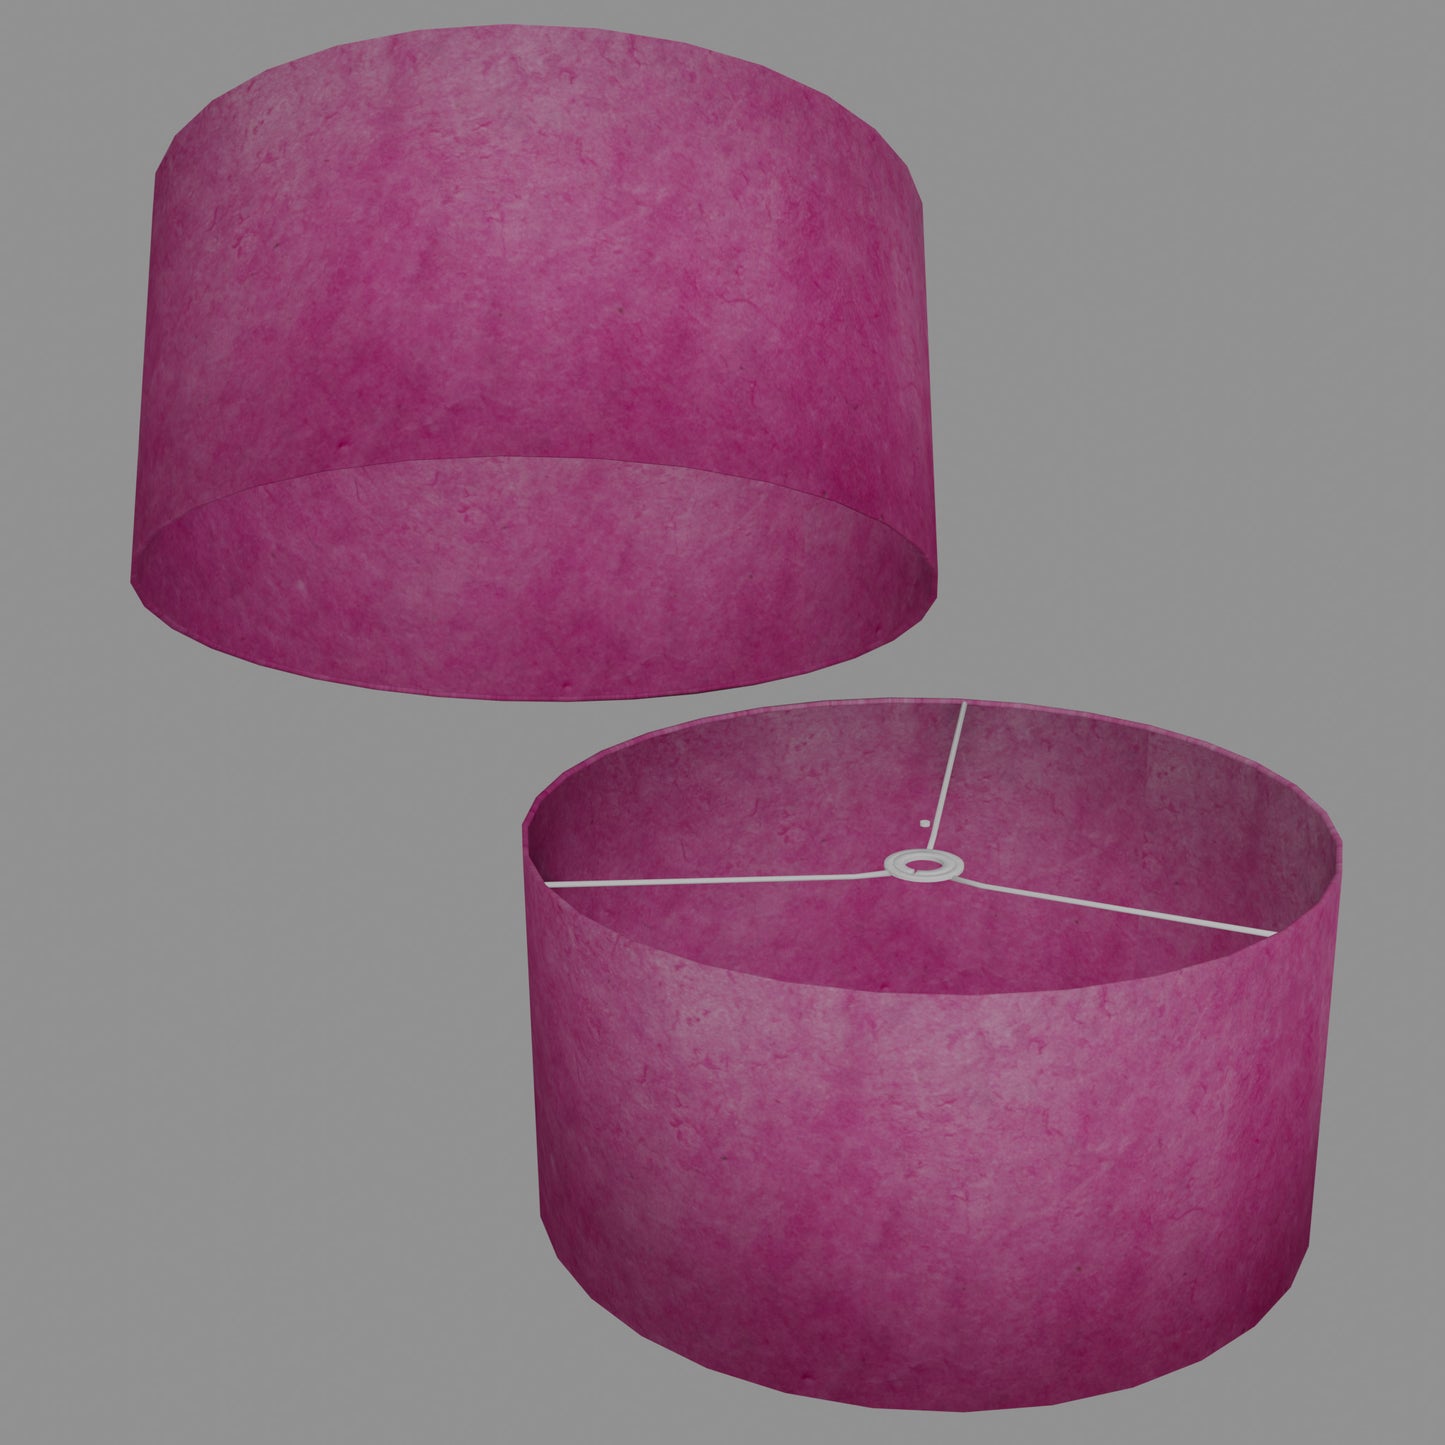 Drum Lamp Shade - P57 - Hot Pink Lokta, 50cm(d) x 25cm(h)